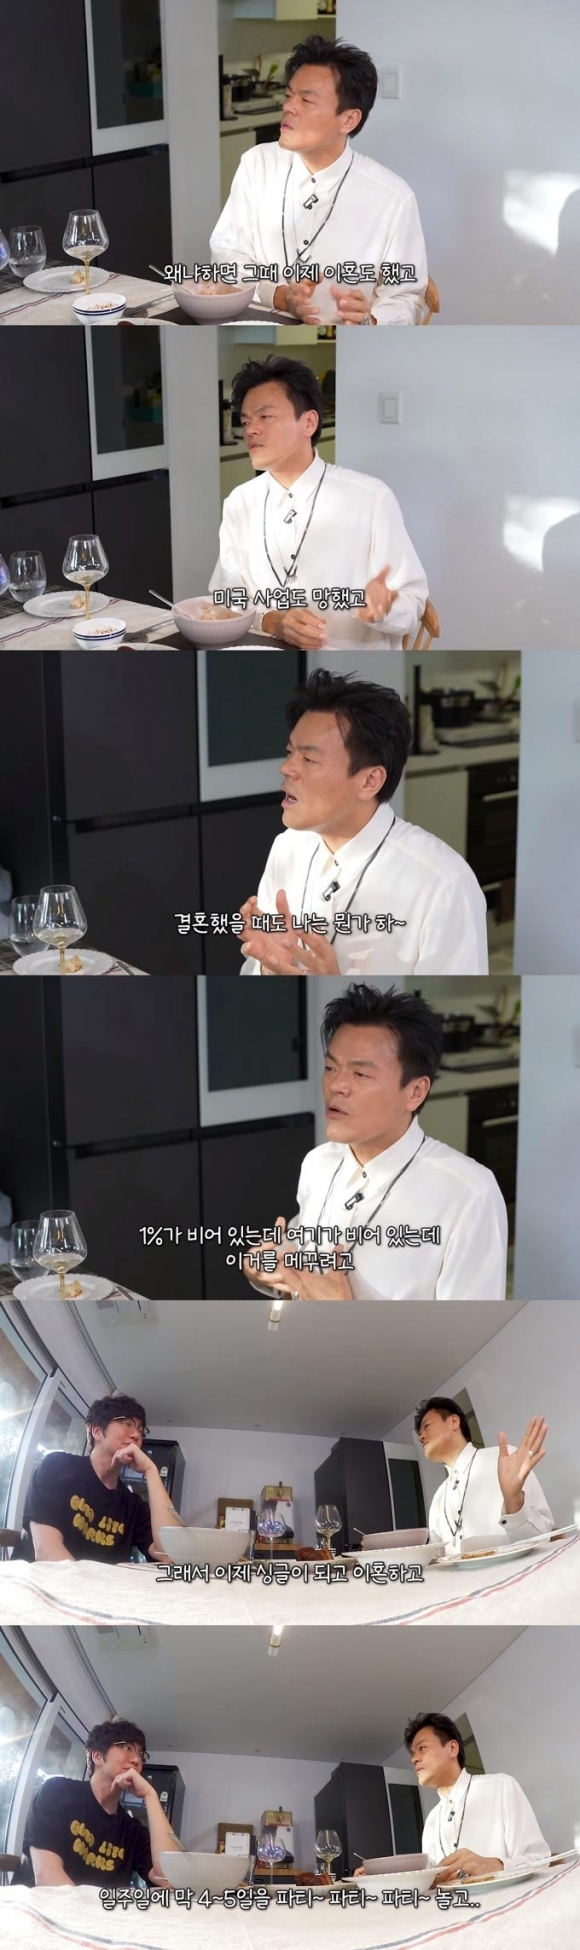 가수 박진영이 종교에 관심을 갖게 된 계기를 밝혔다. 성시경 유튜브 채널